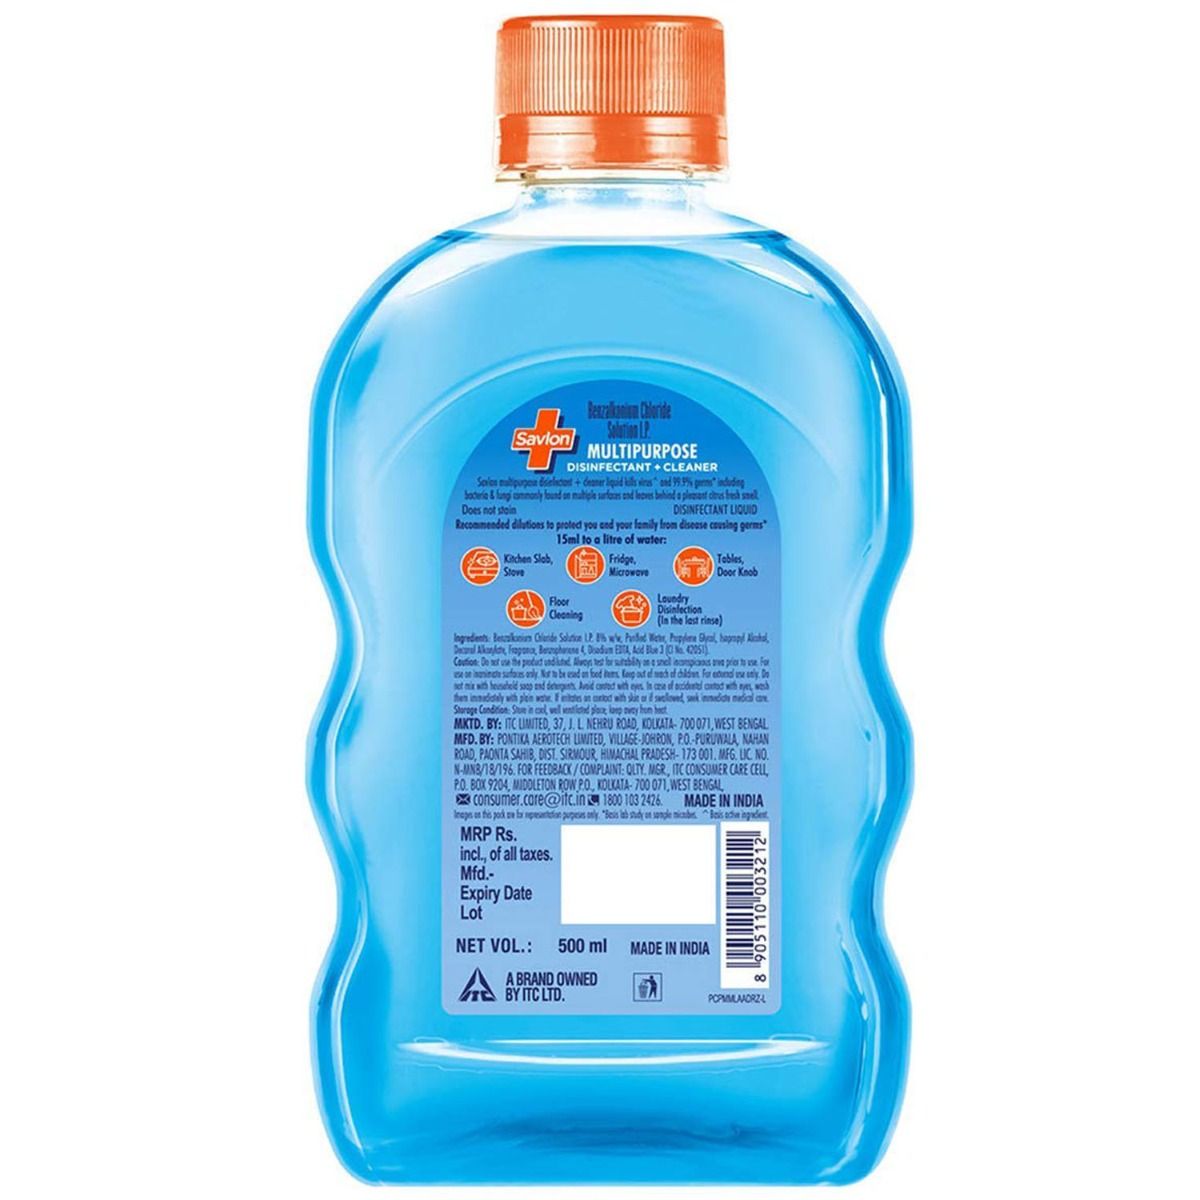 Savlon Multi Purpose Disinfectant Liquid, 500 ml, Pack of 1 